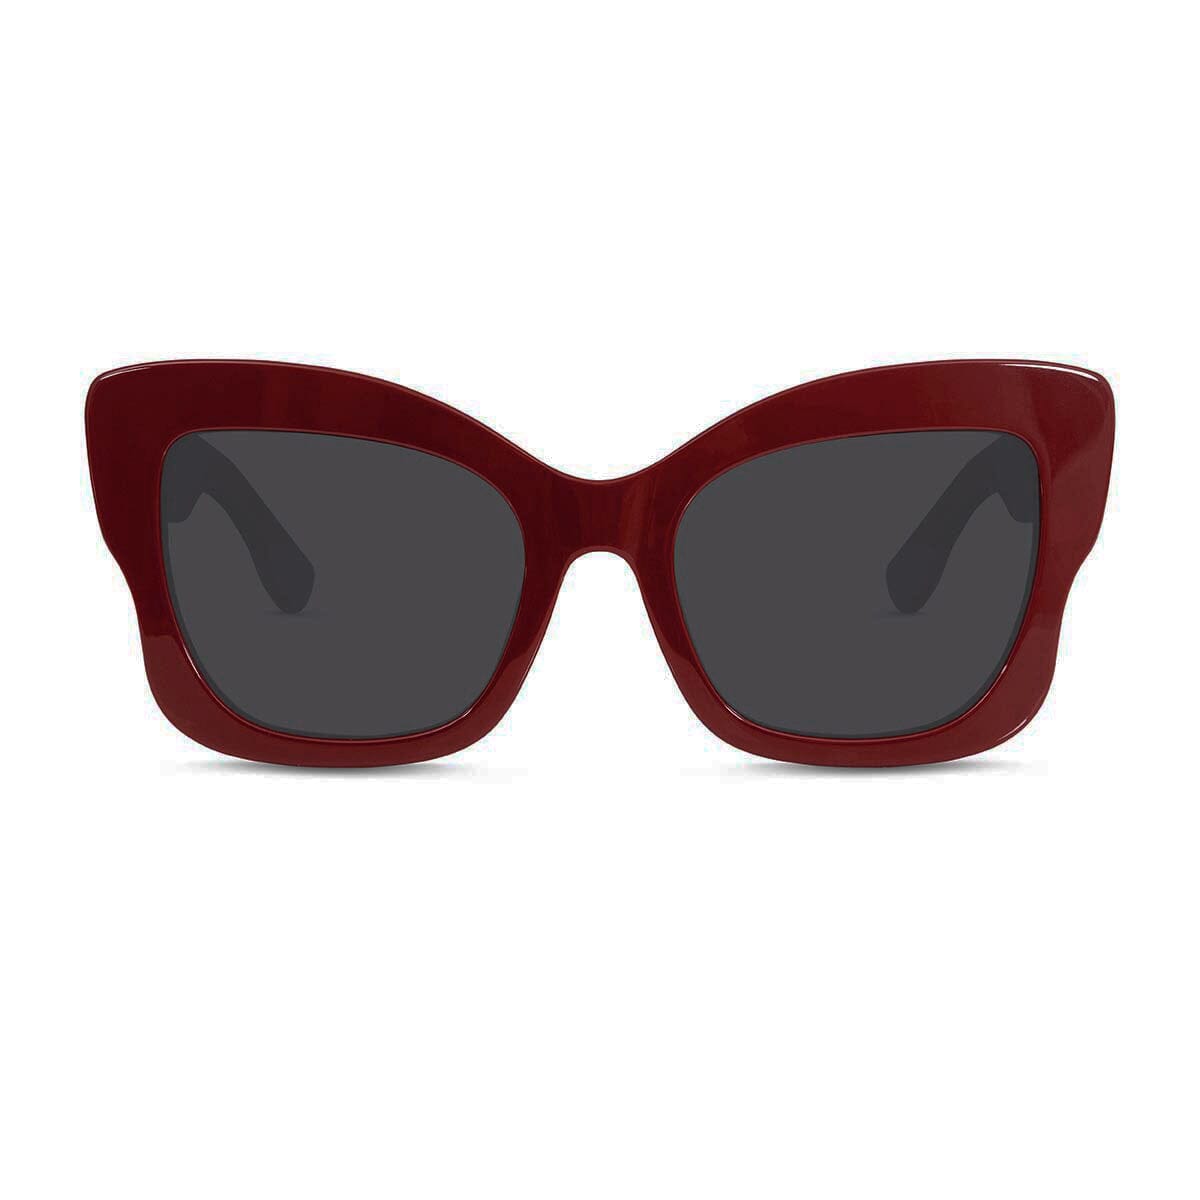 Gafas de sol Mario Hernandez Monarca #color_rojo-cruz